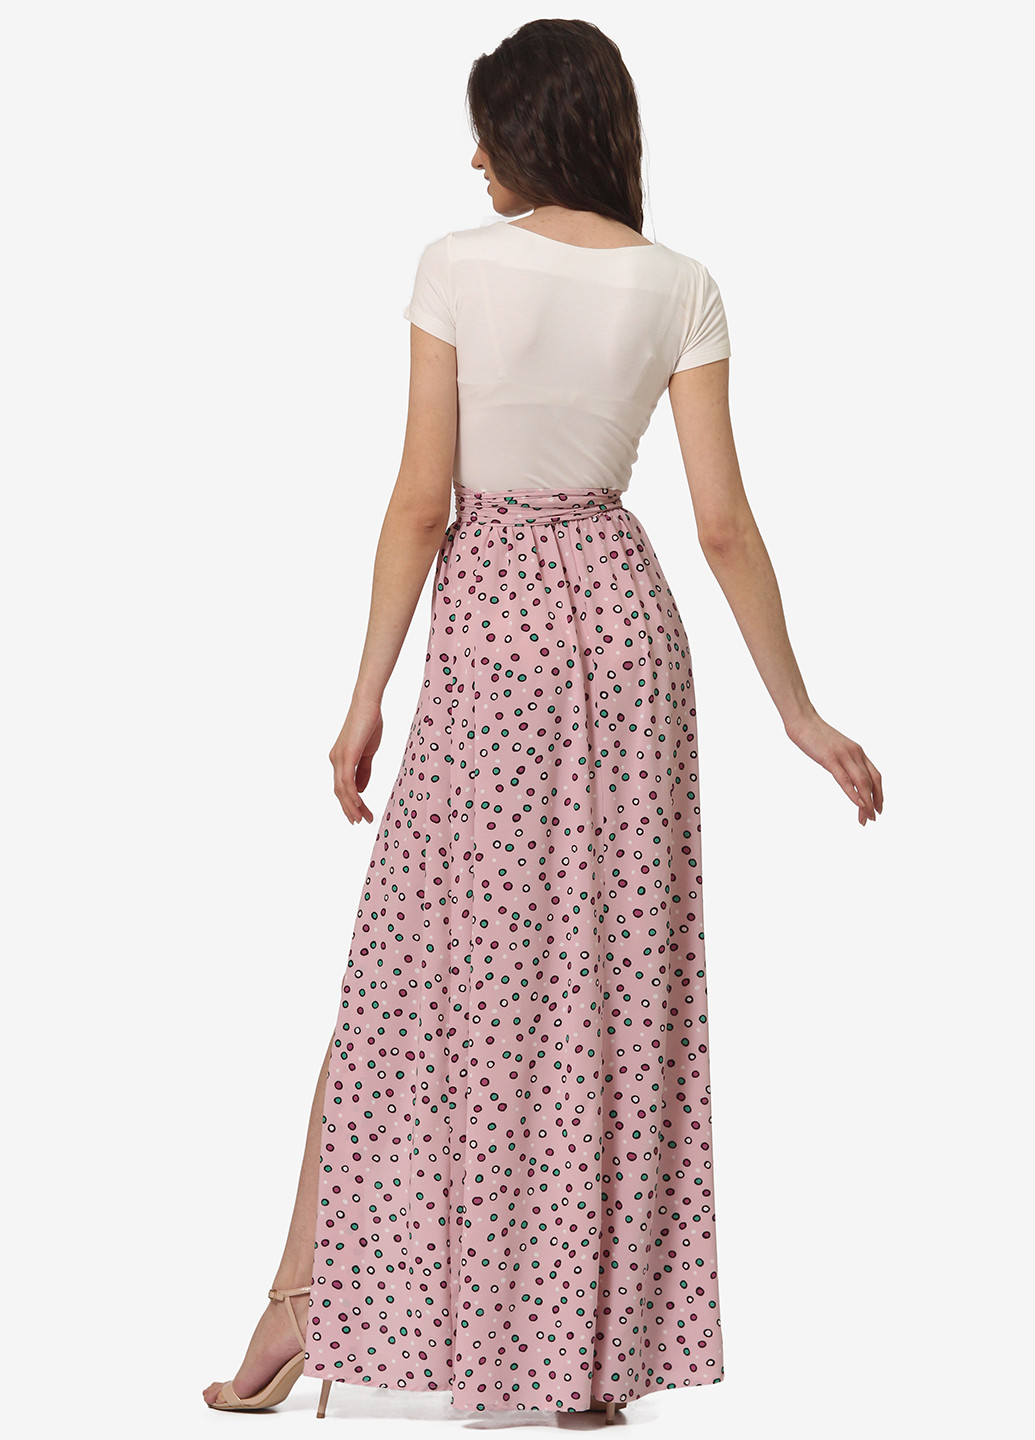 Светло-розовая кэжуал в горошек юбка Lila Kass клешированная